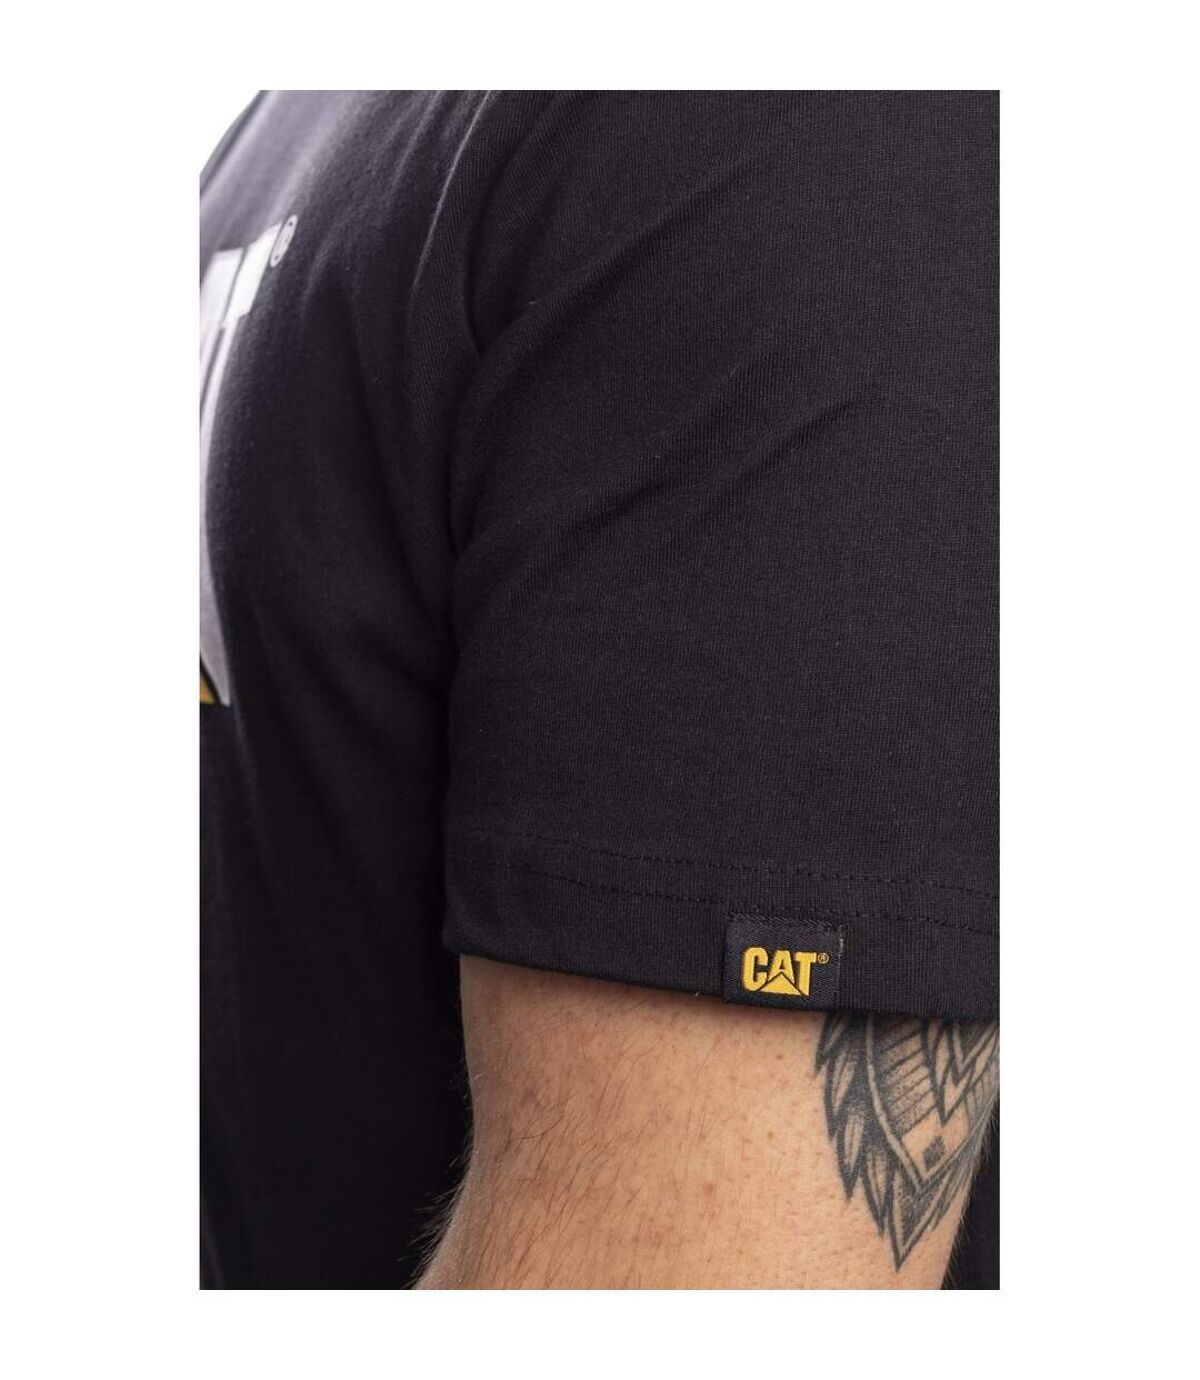 Caterpillar - T-shirt manches courtes - Homme (Noir) - UTFS4251